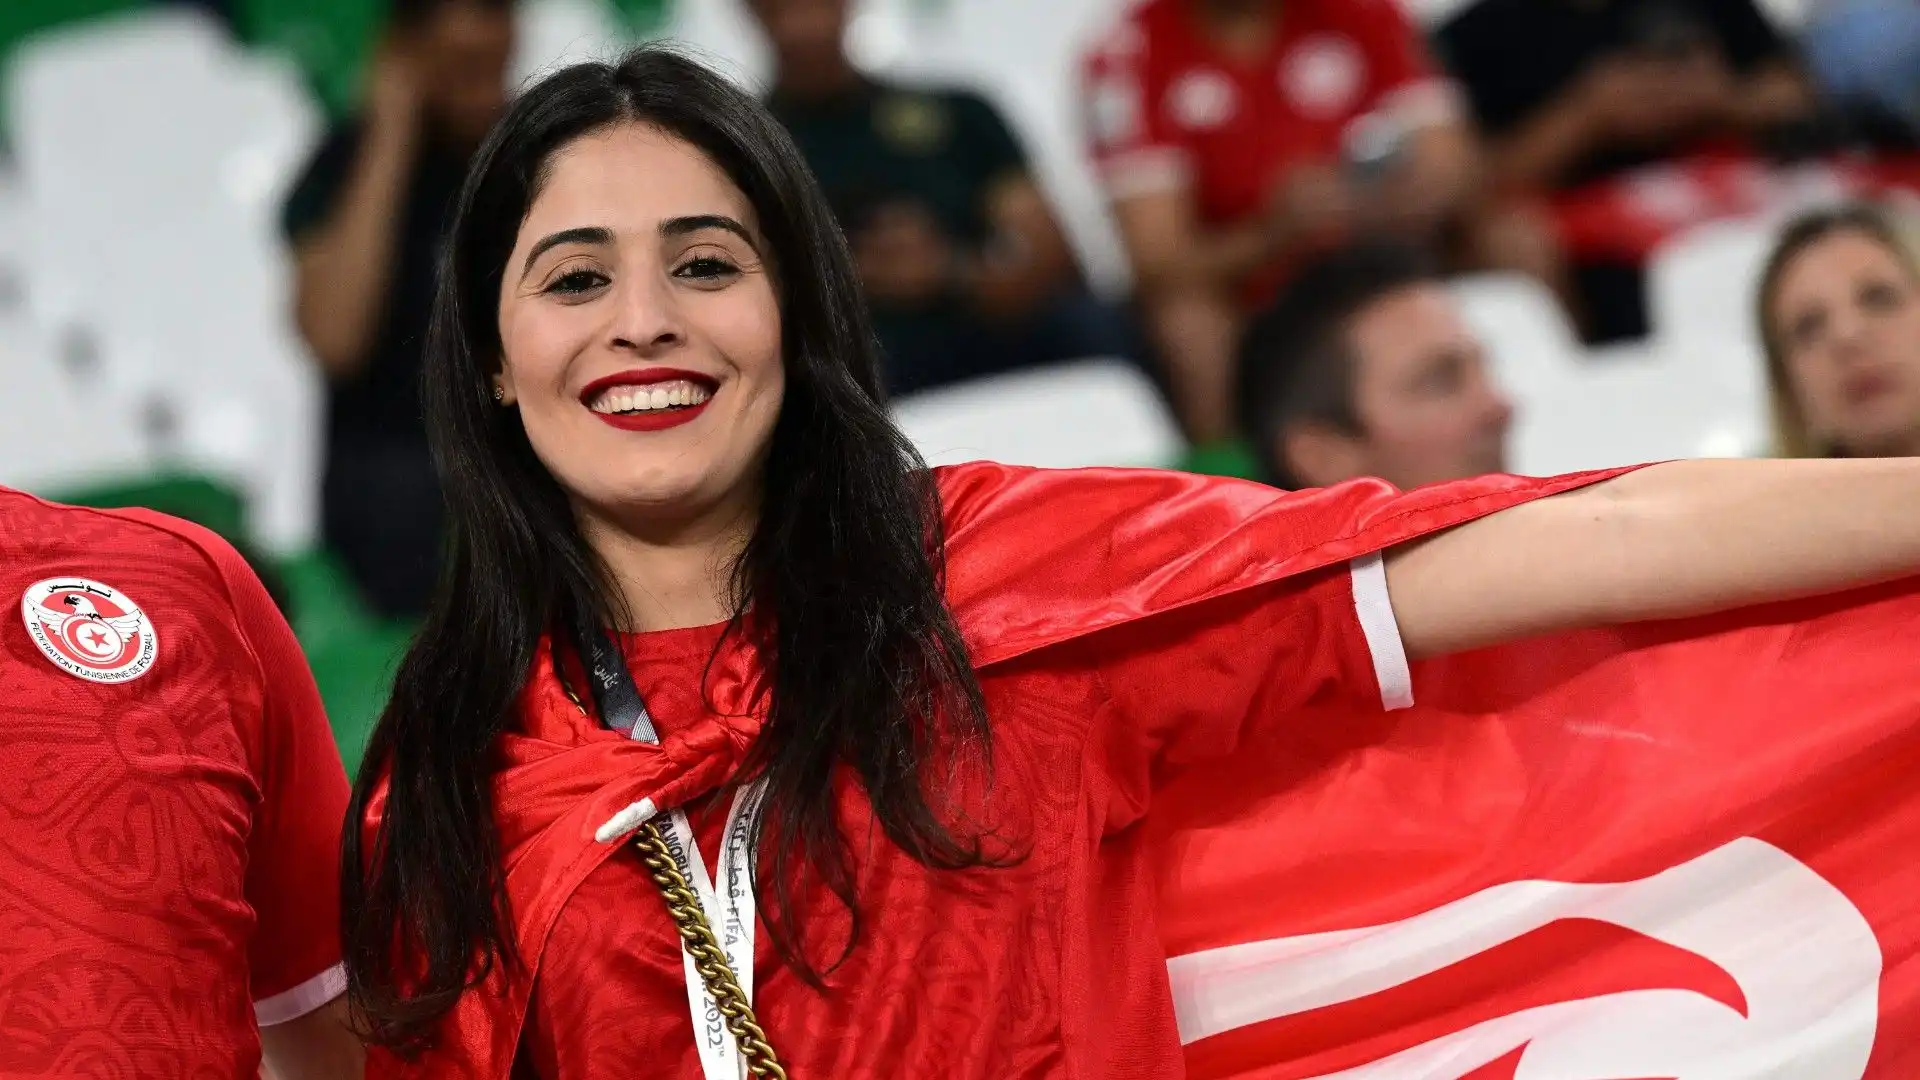 Questa ragazza ha indosso la bandiera tunisina